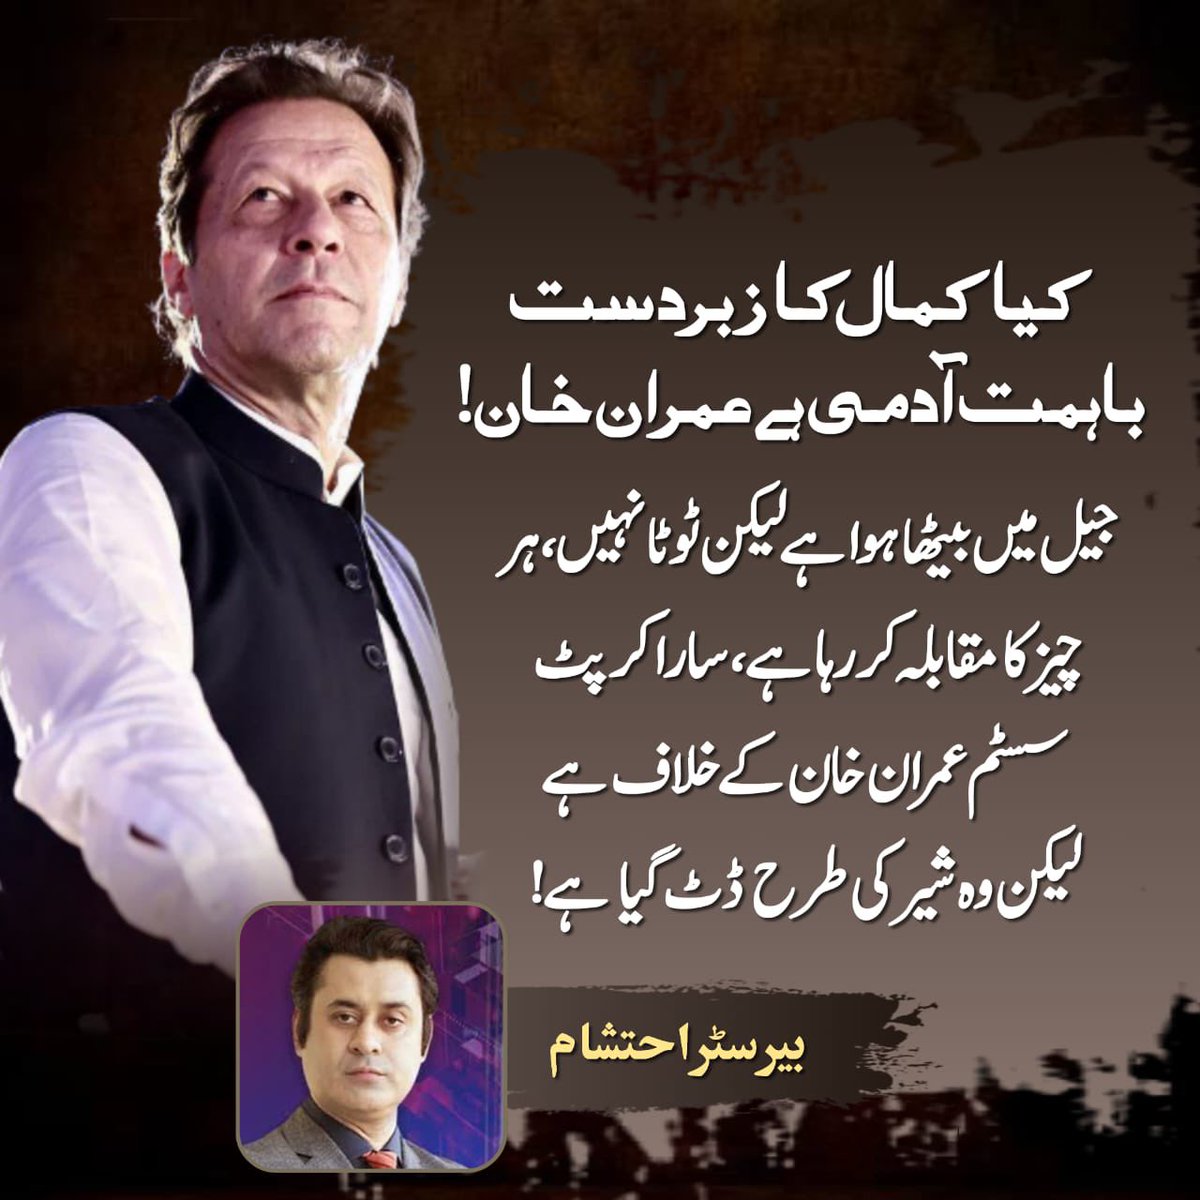 لیڈر صرف عمران خان!
قوم کا فیصلہ صرف عمران خان!
جیت گیا ہے کپتان!
#عوام_بمقابلہ_کرپٹ_نظام